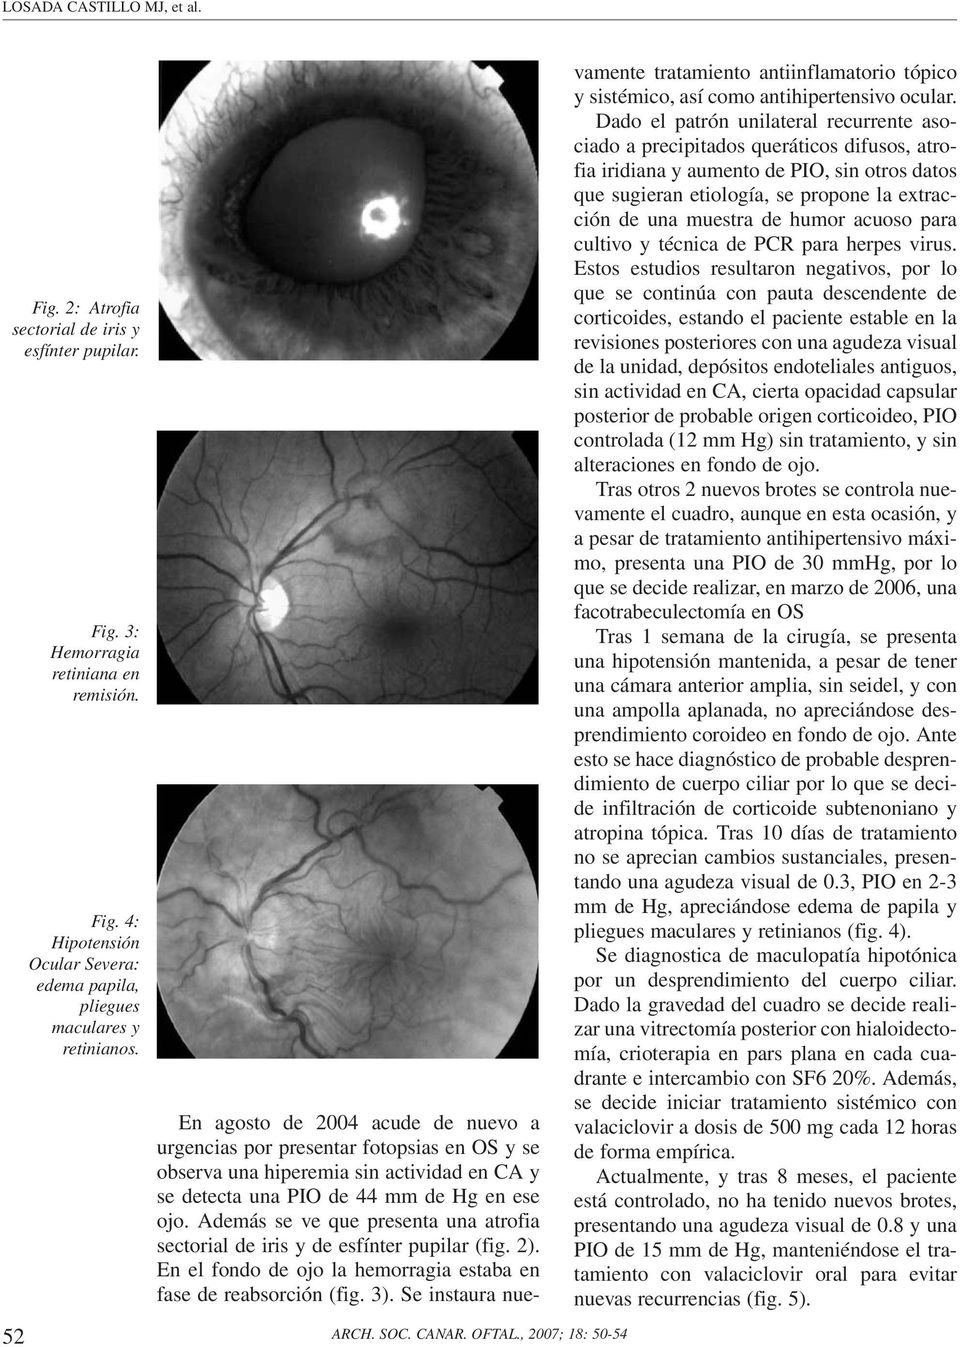 Además se ve que presenta una atrofia sectorial de iris y de esfínter pupilar (fig. 2). En el fondo de ojo la hemorragia estaba en fase de reabsorción (fig. 3).